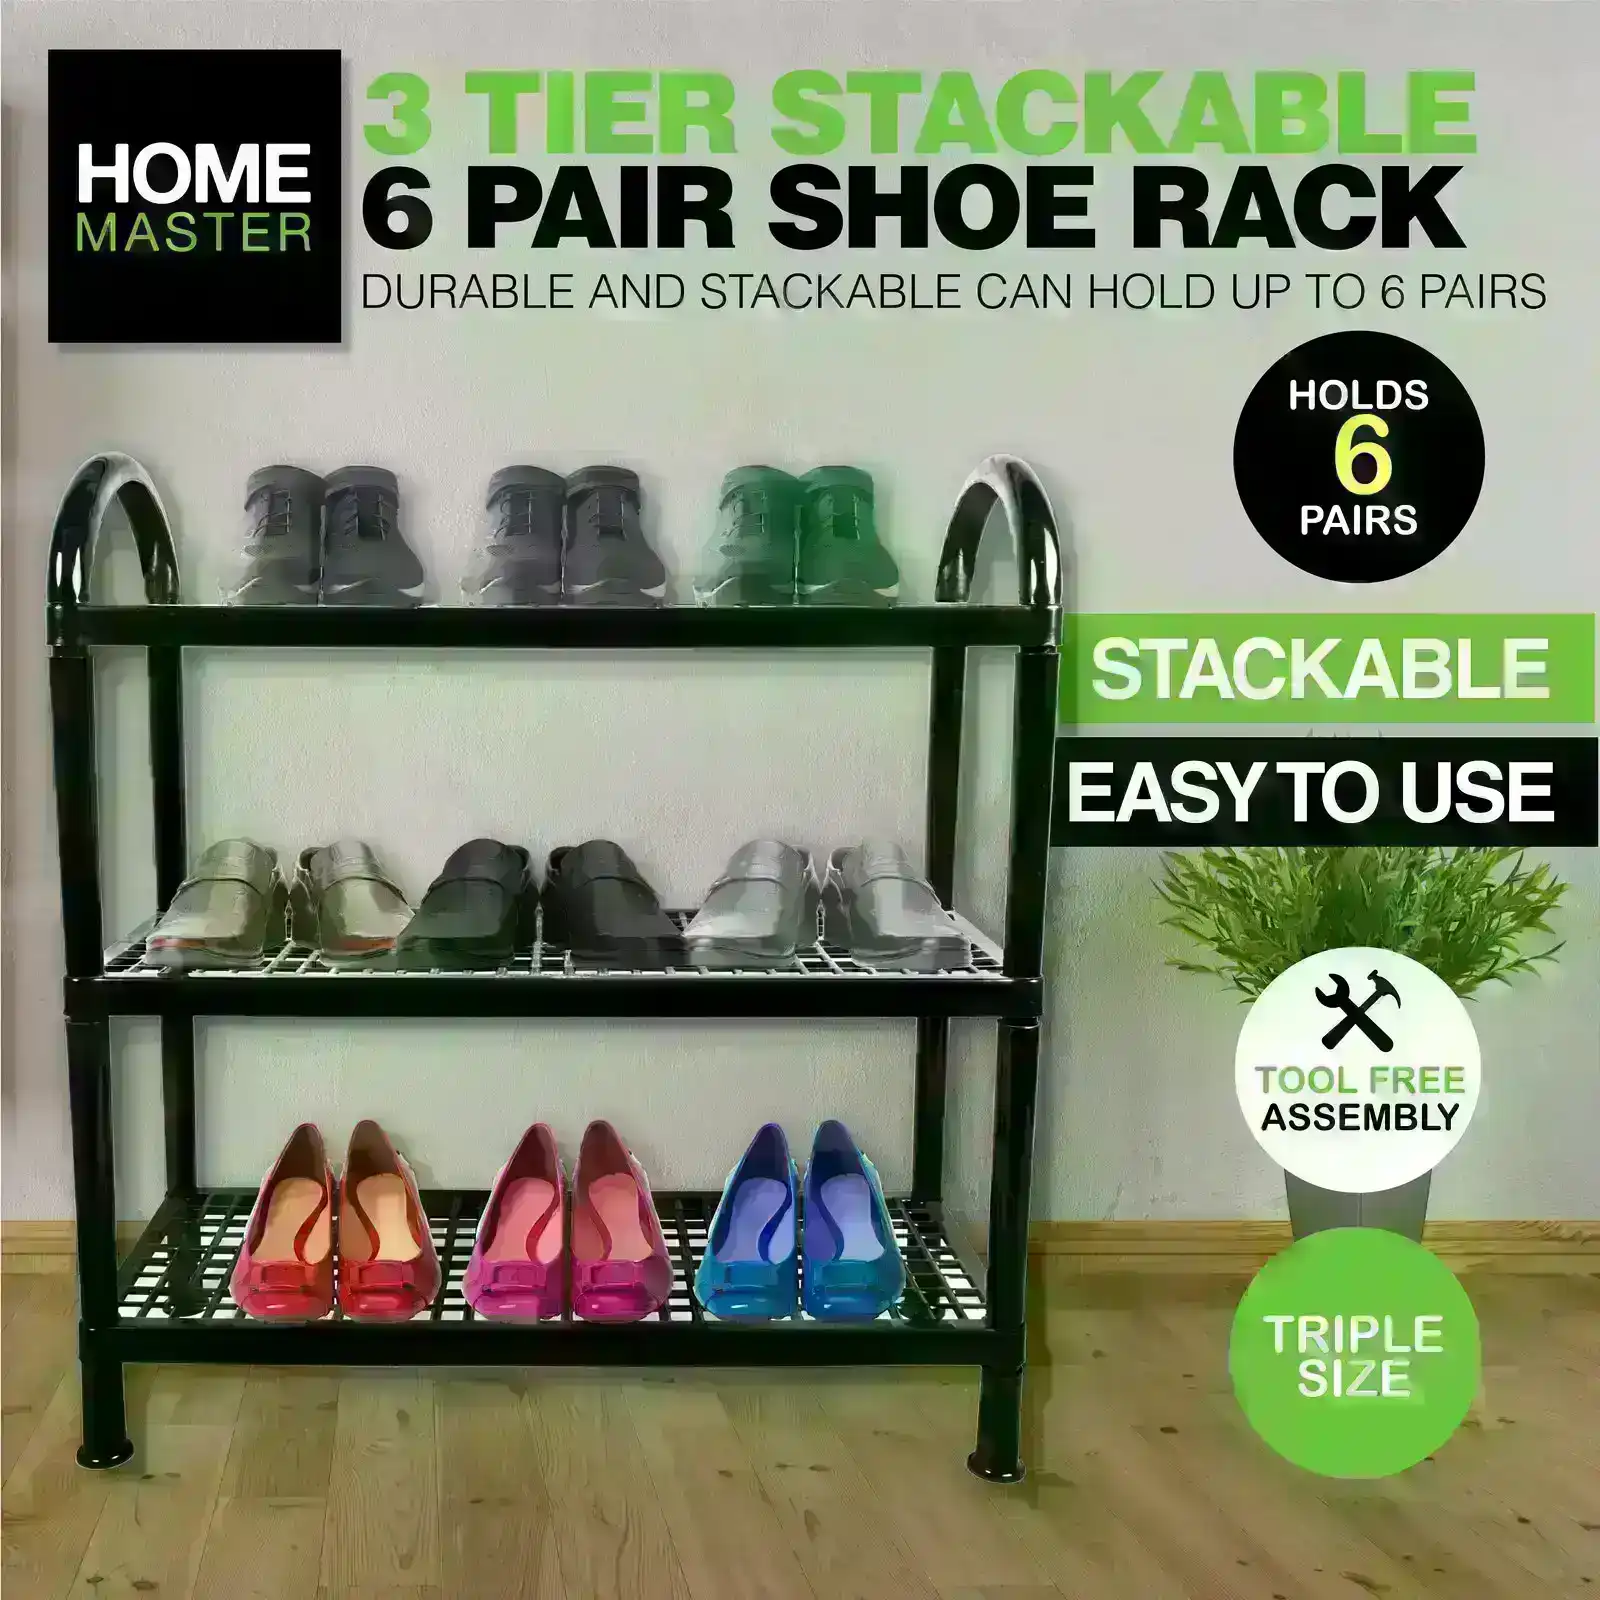 Home Master® 3 Tier Shoe Rack Stackable Portable Non-Slip Rubber Feet Compact